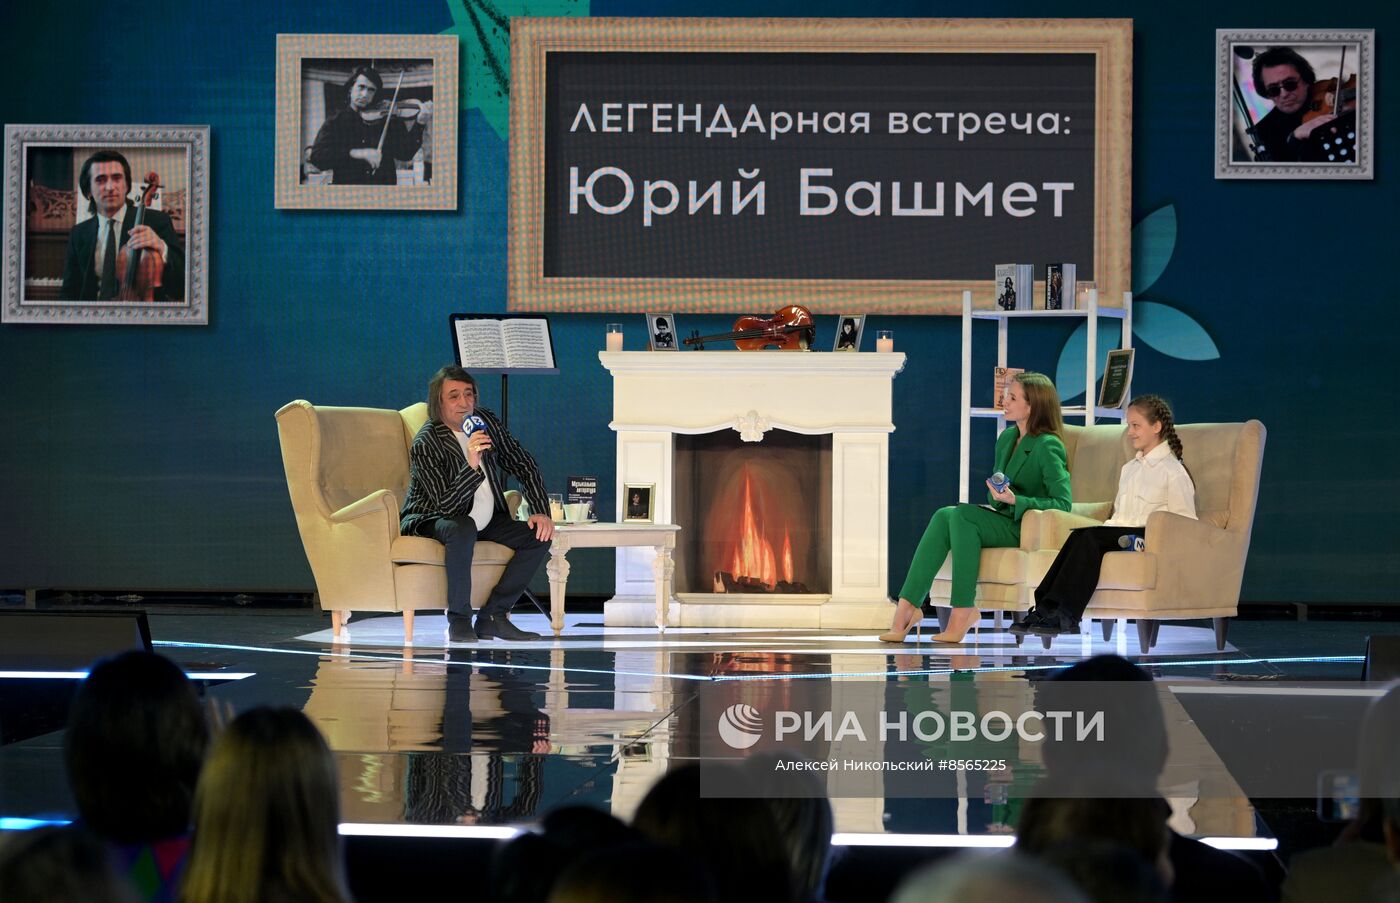 Выставка "Россия". Шоу-лекция наставника и эксперта Юрия Башмета